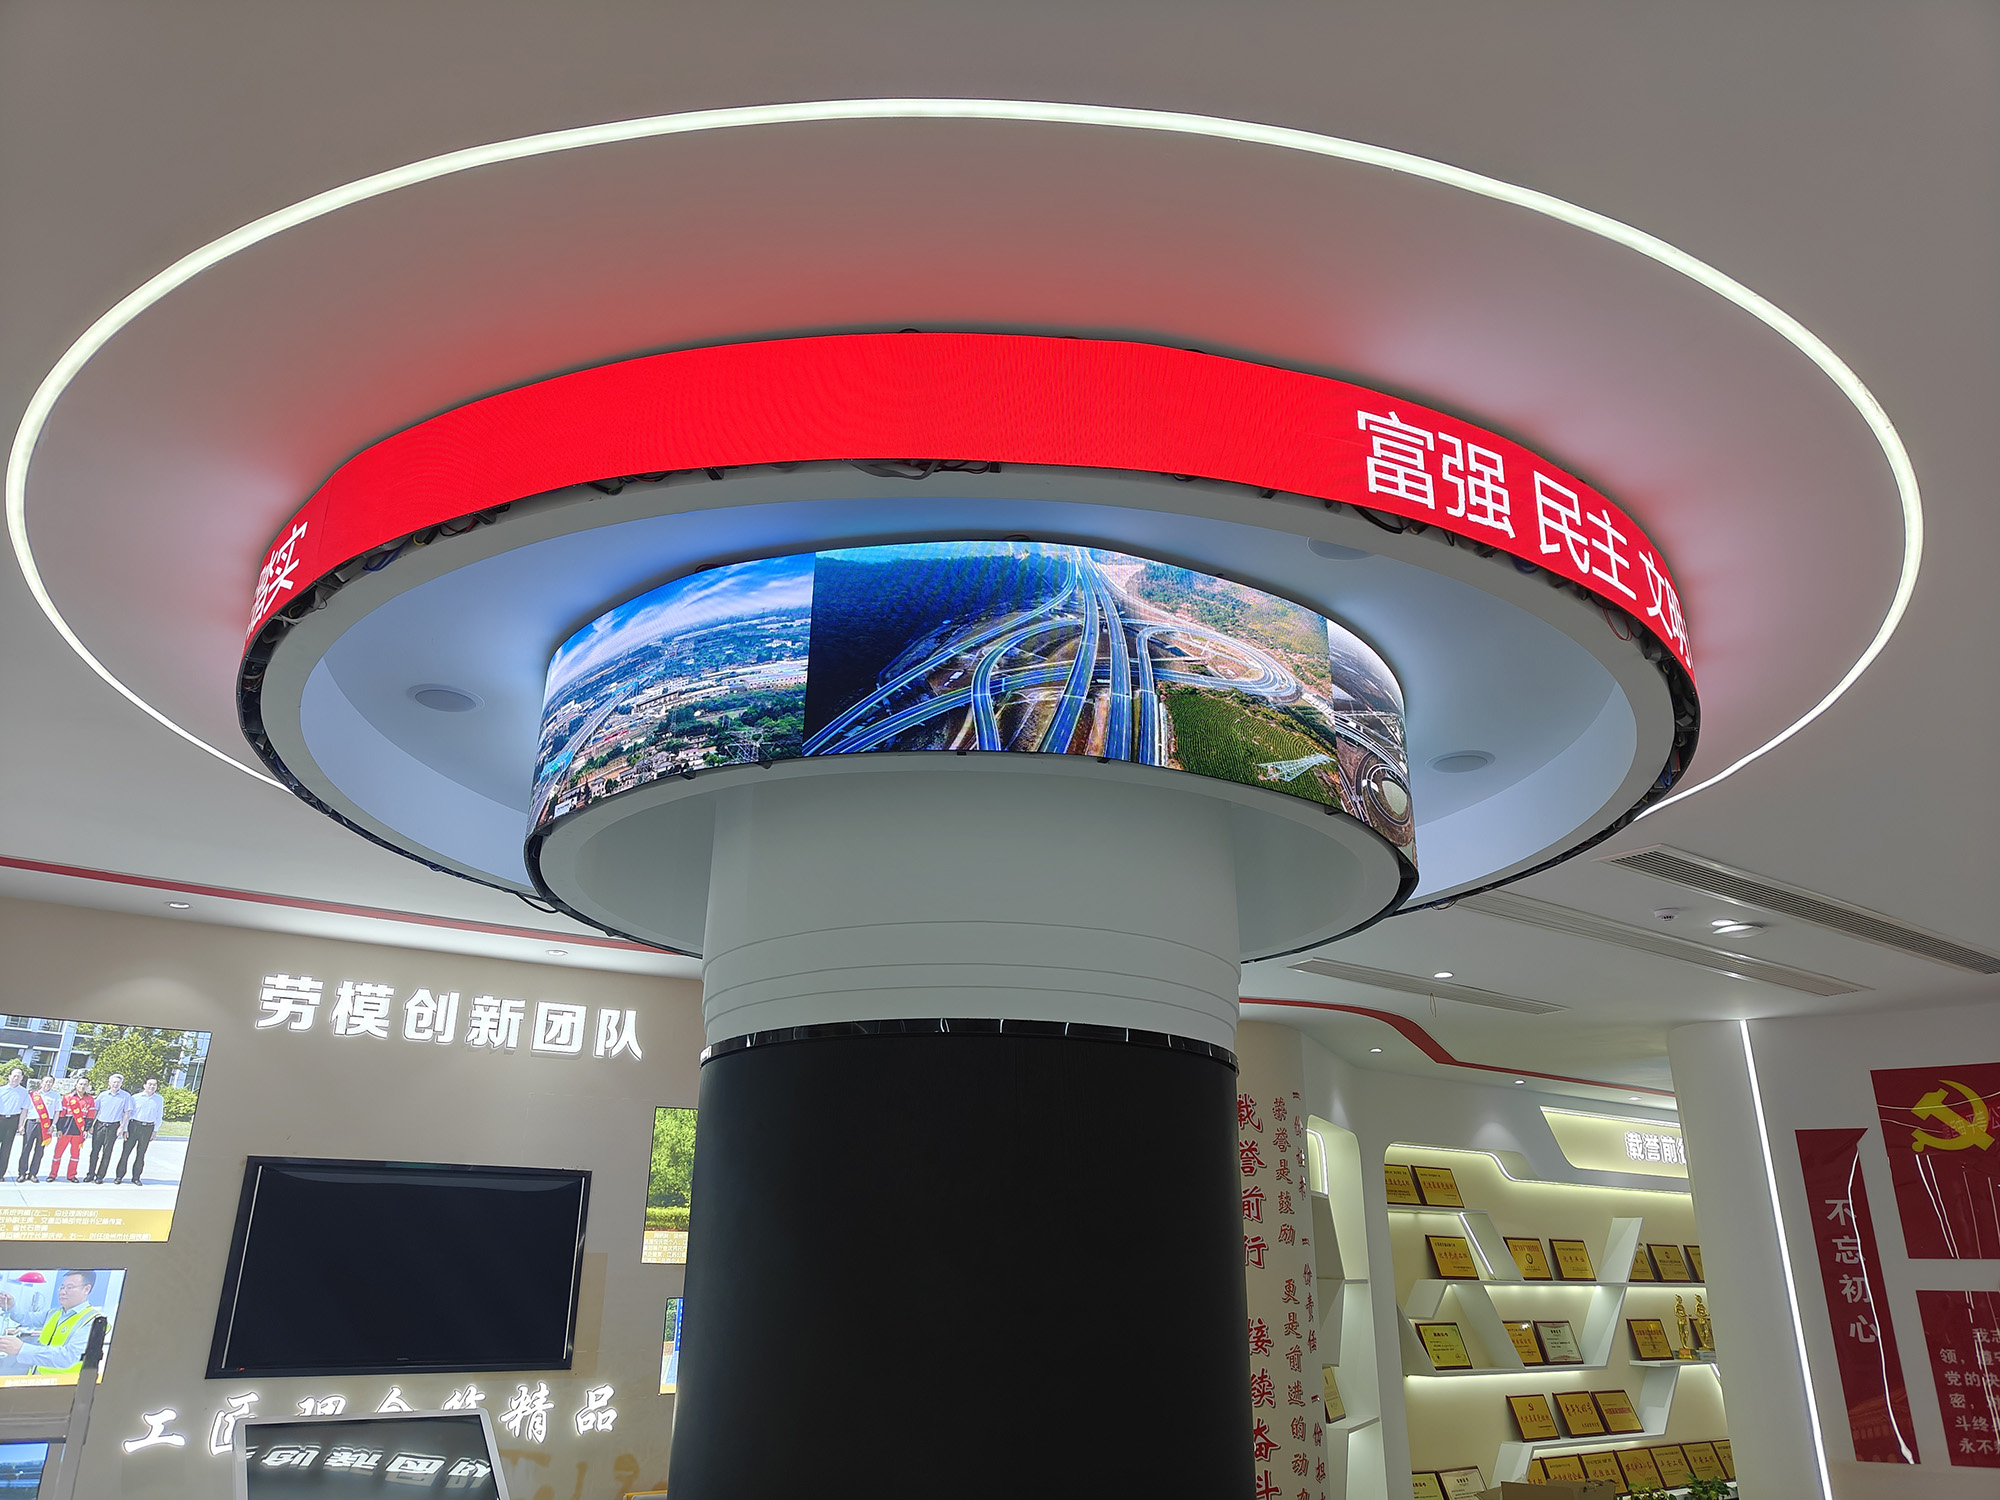  江苏省徐州市鼓楼区软模组P2.0 led显示屏